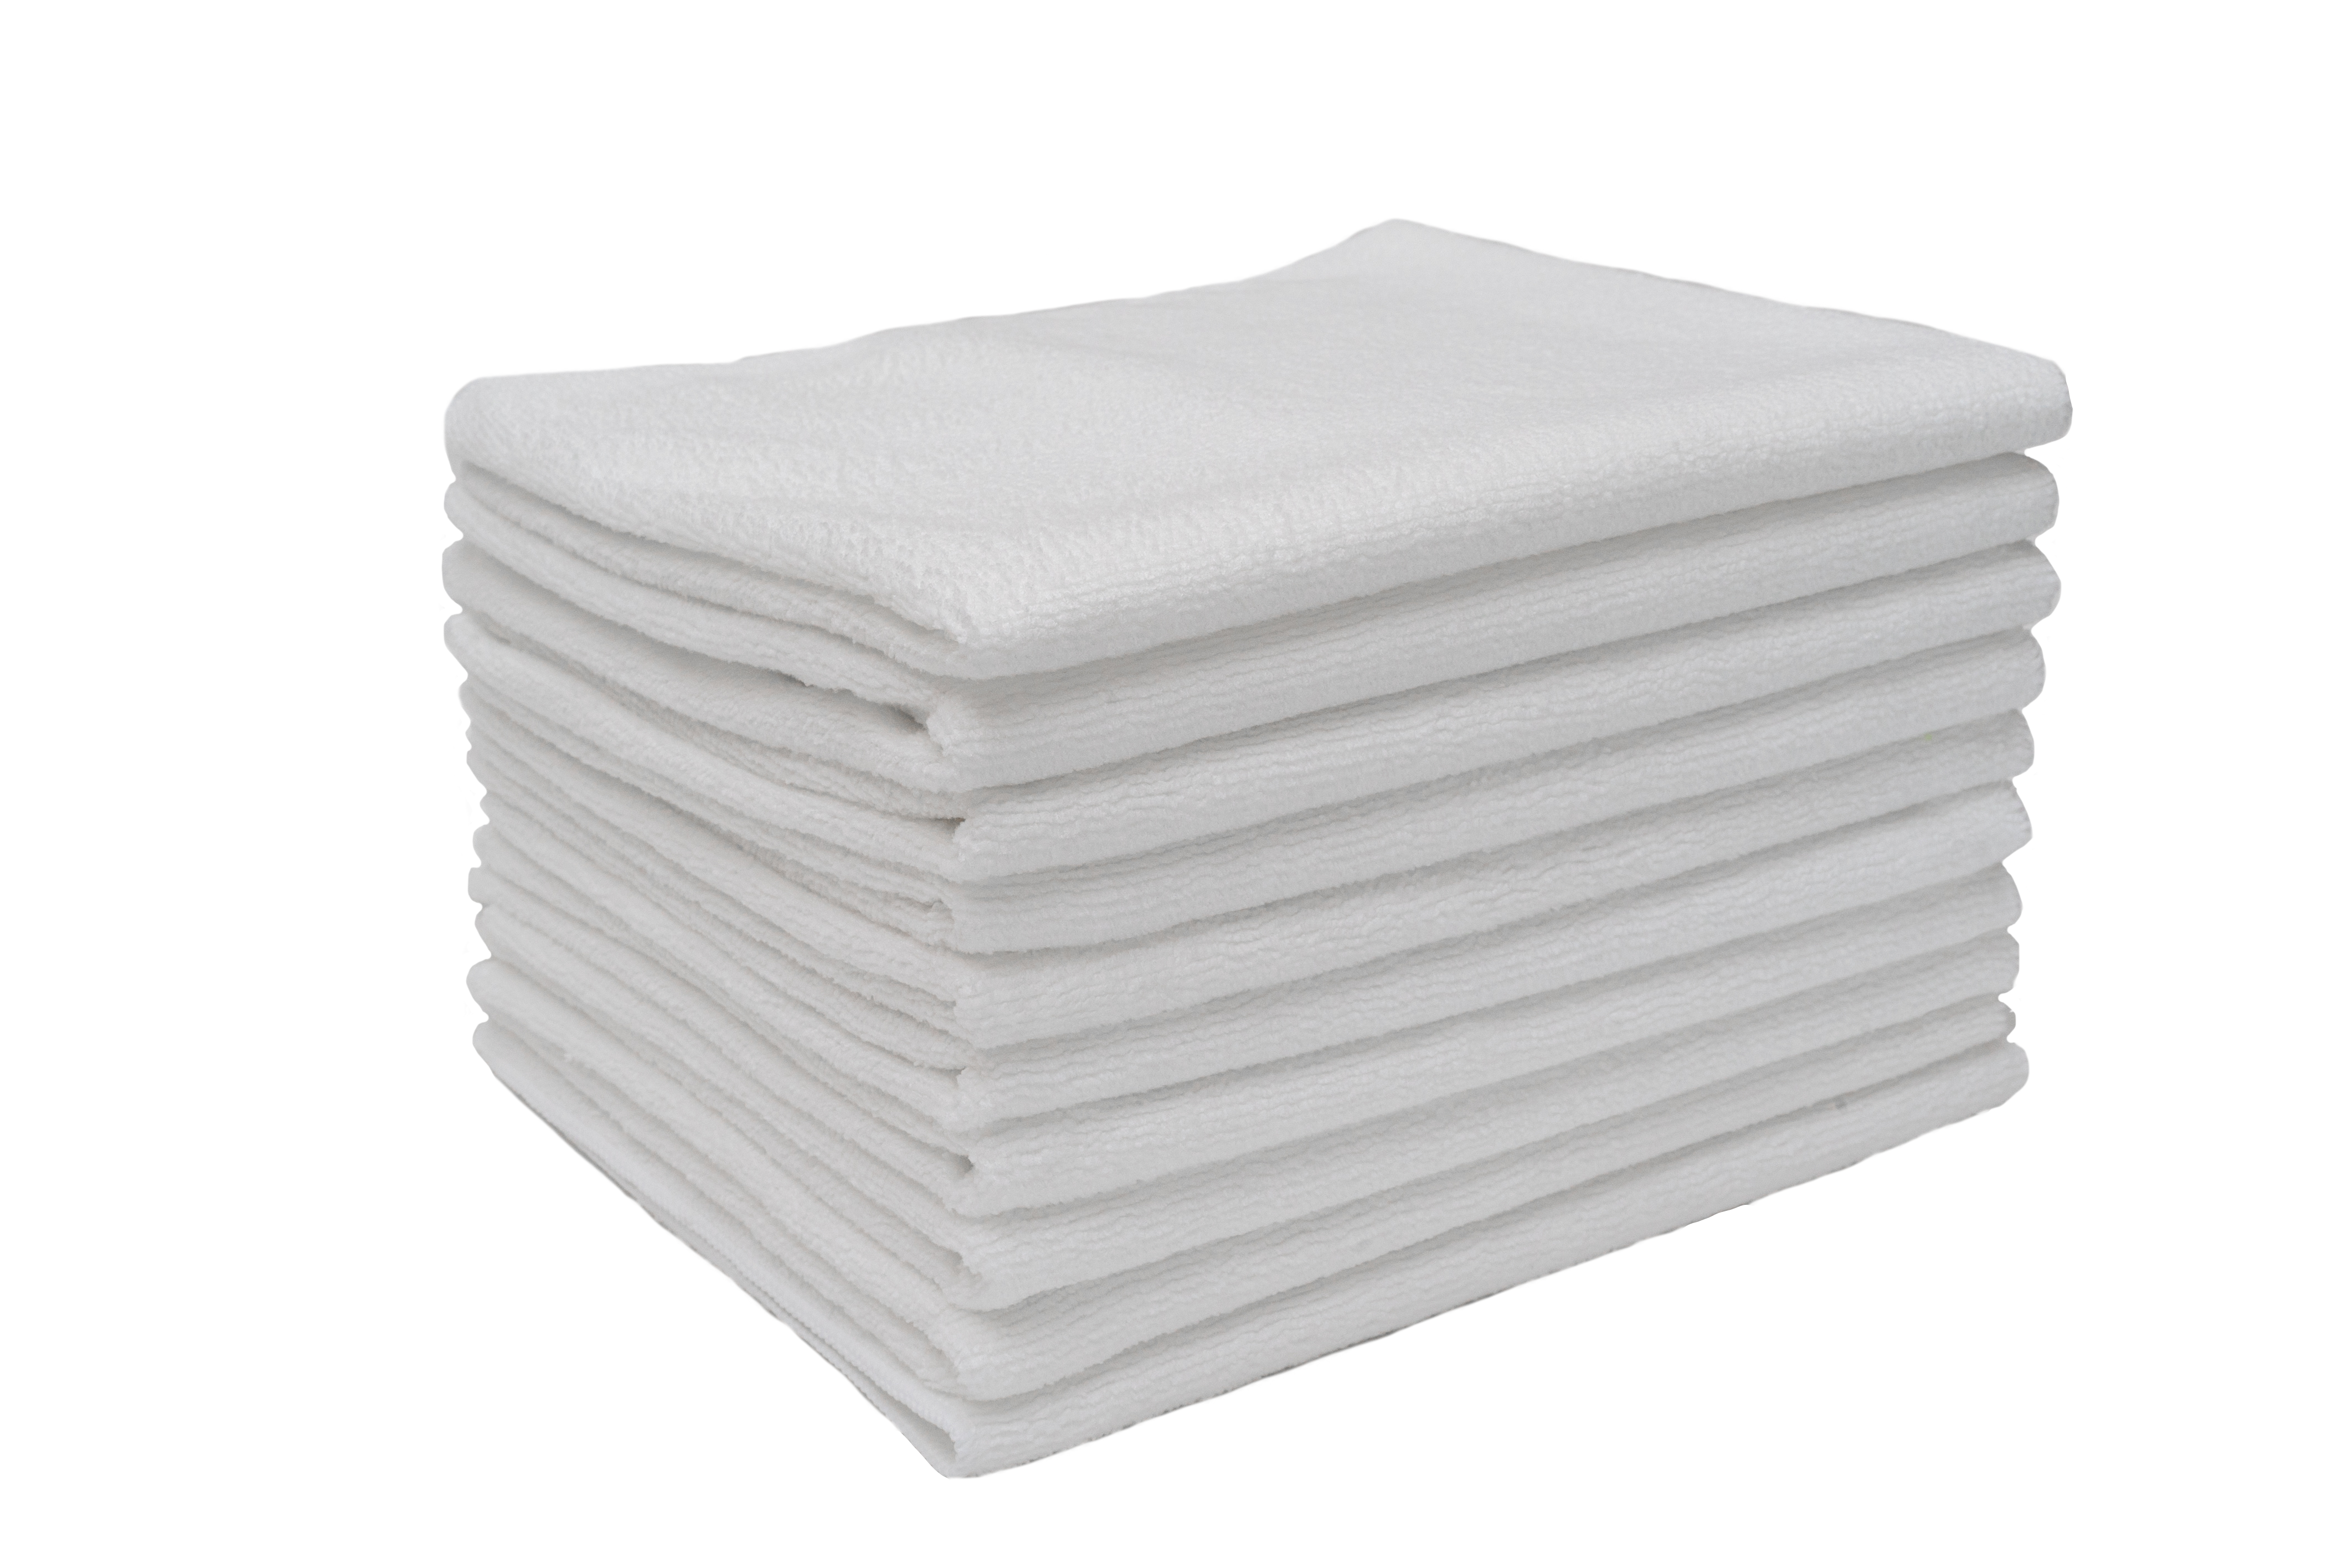 Partex micro4™ Microfiber 16" x 28" 2.0lb Terry Salon Towels